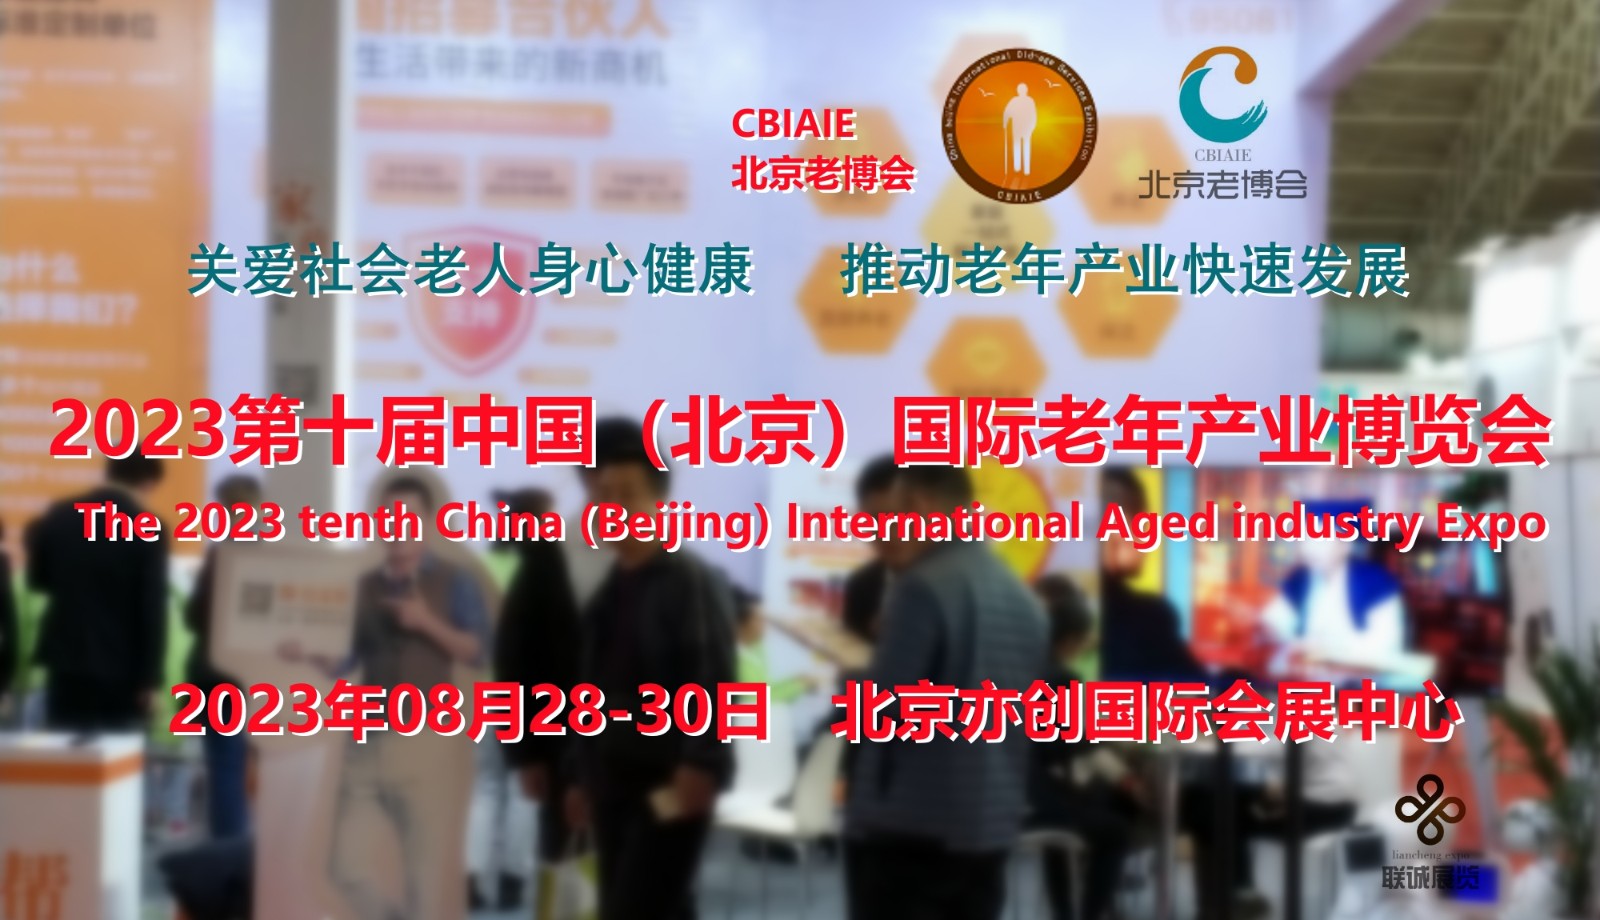 2023养老展，CBIAIE第十届中国北京国际老年产业博览会图1